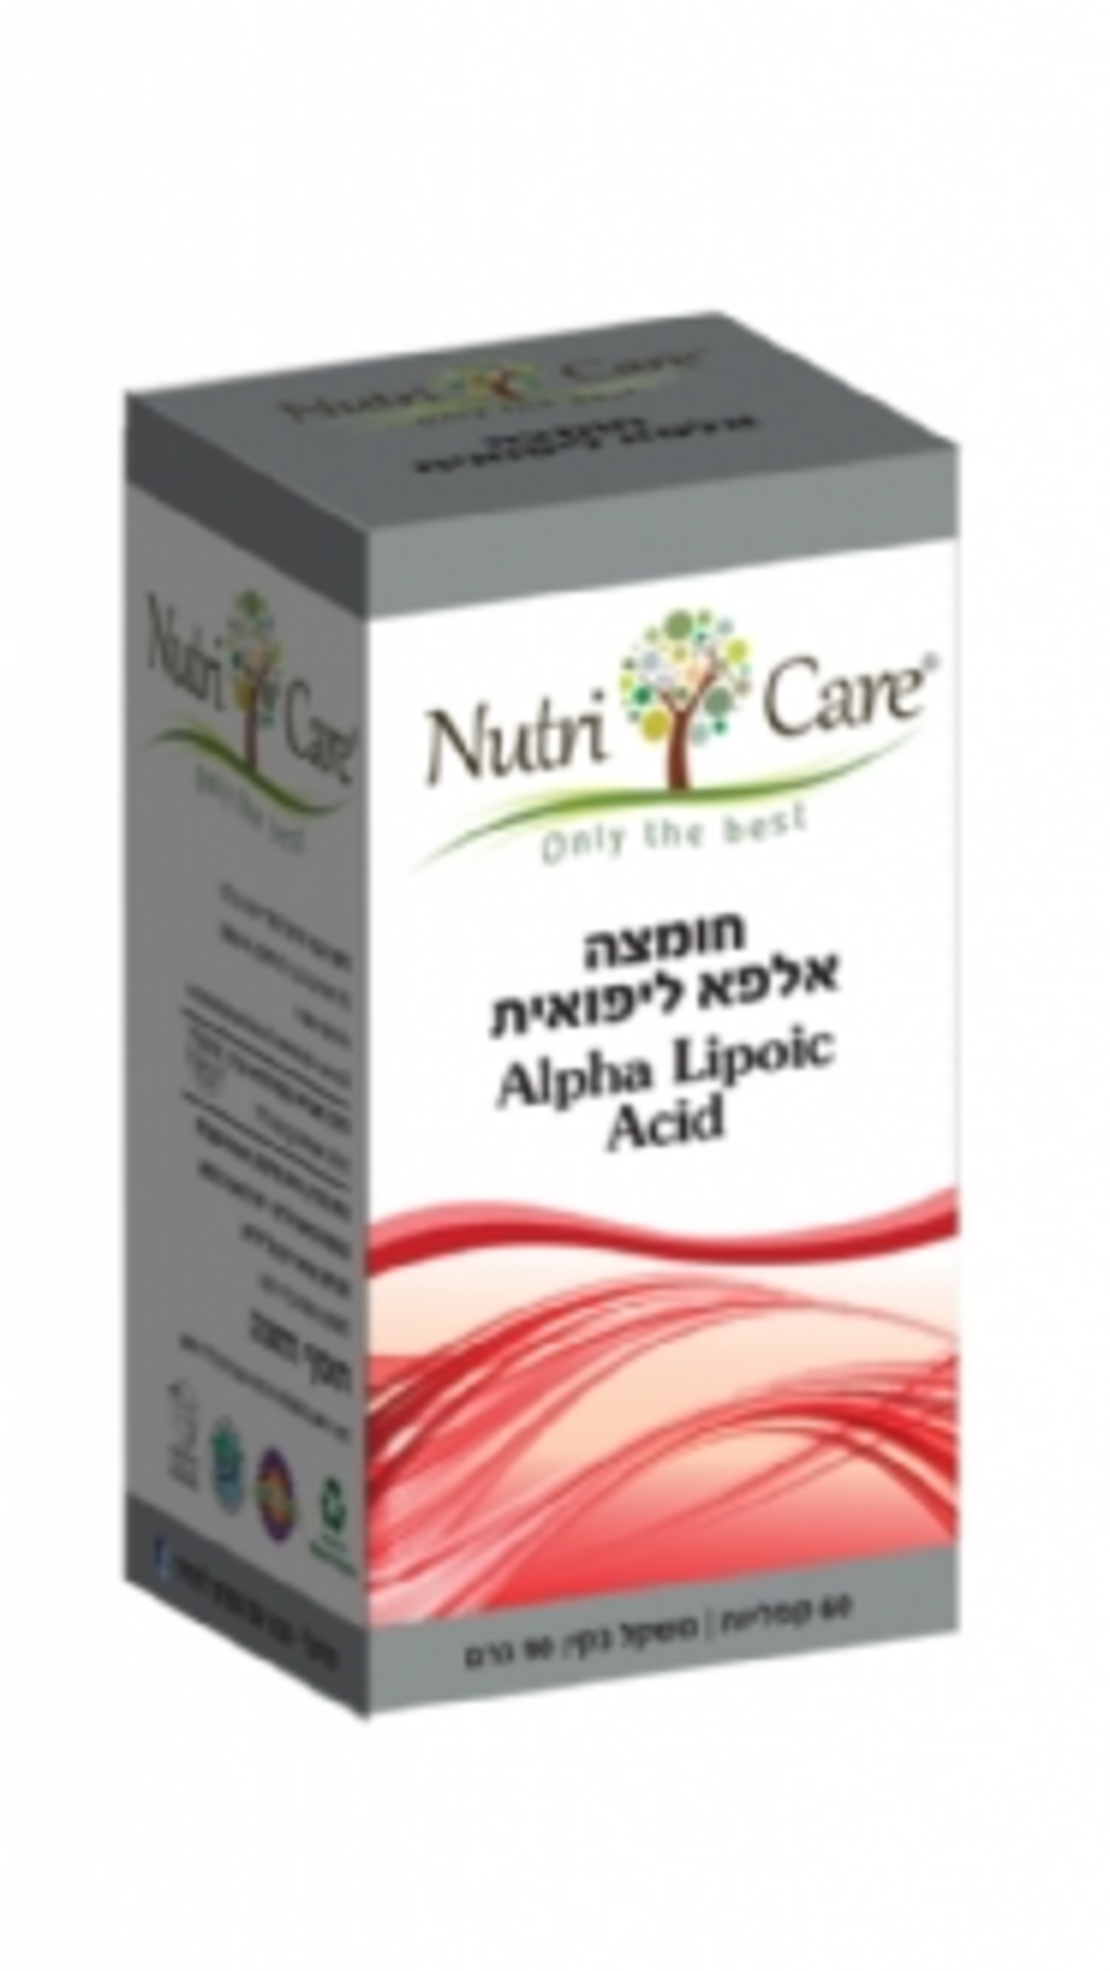 נוטרי קר - חומצה אלפא ליפואית | Nutri Care | Alpha Lipoic Acid